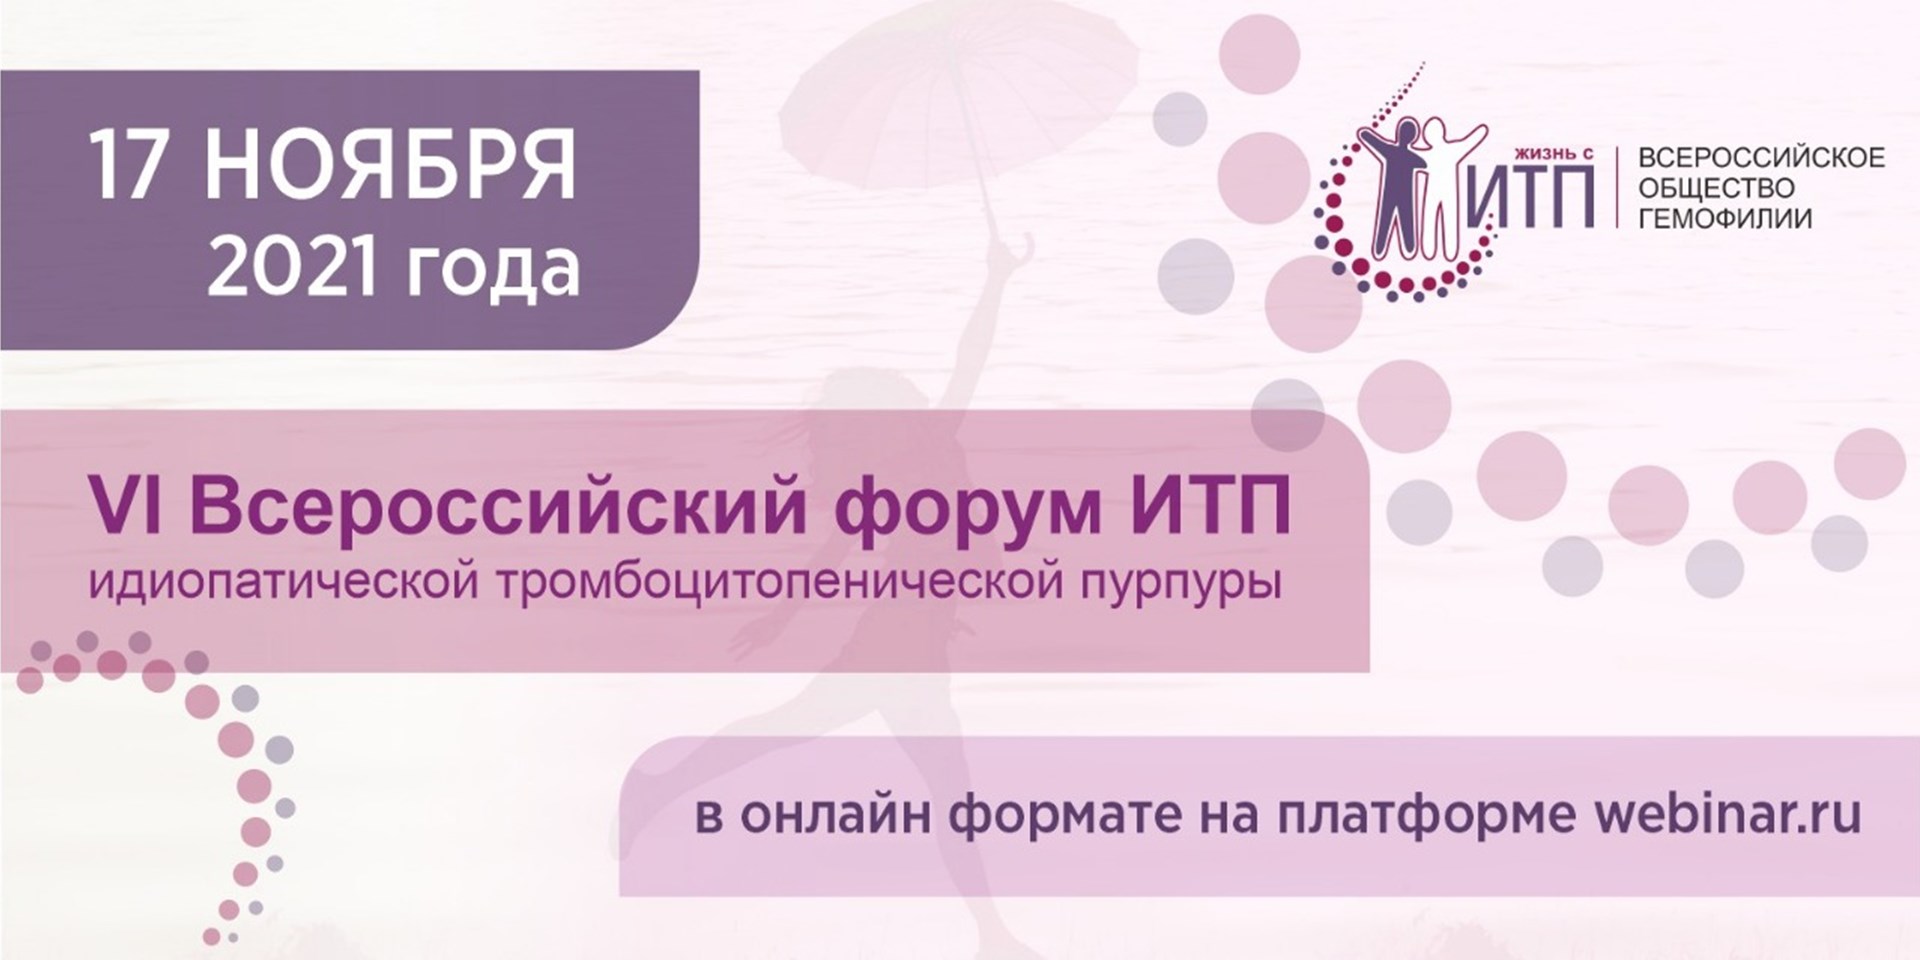 17 ноября 2021 года состоится VI Всероссийский форум имунной тромбоцитопенической пурпуры (ИТП)